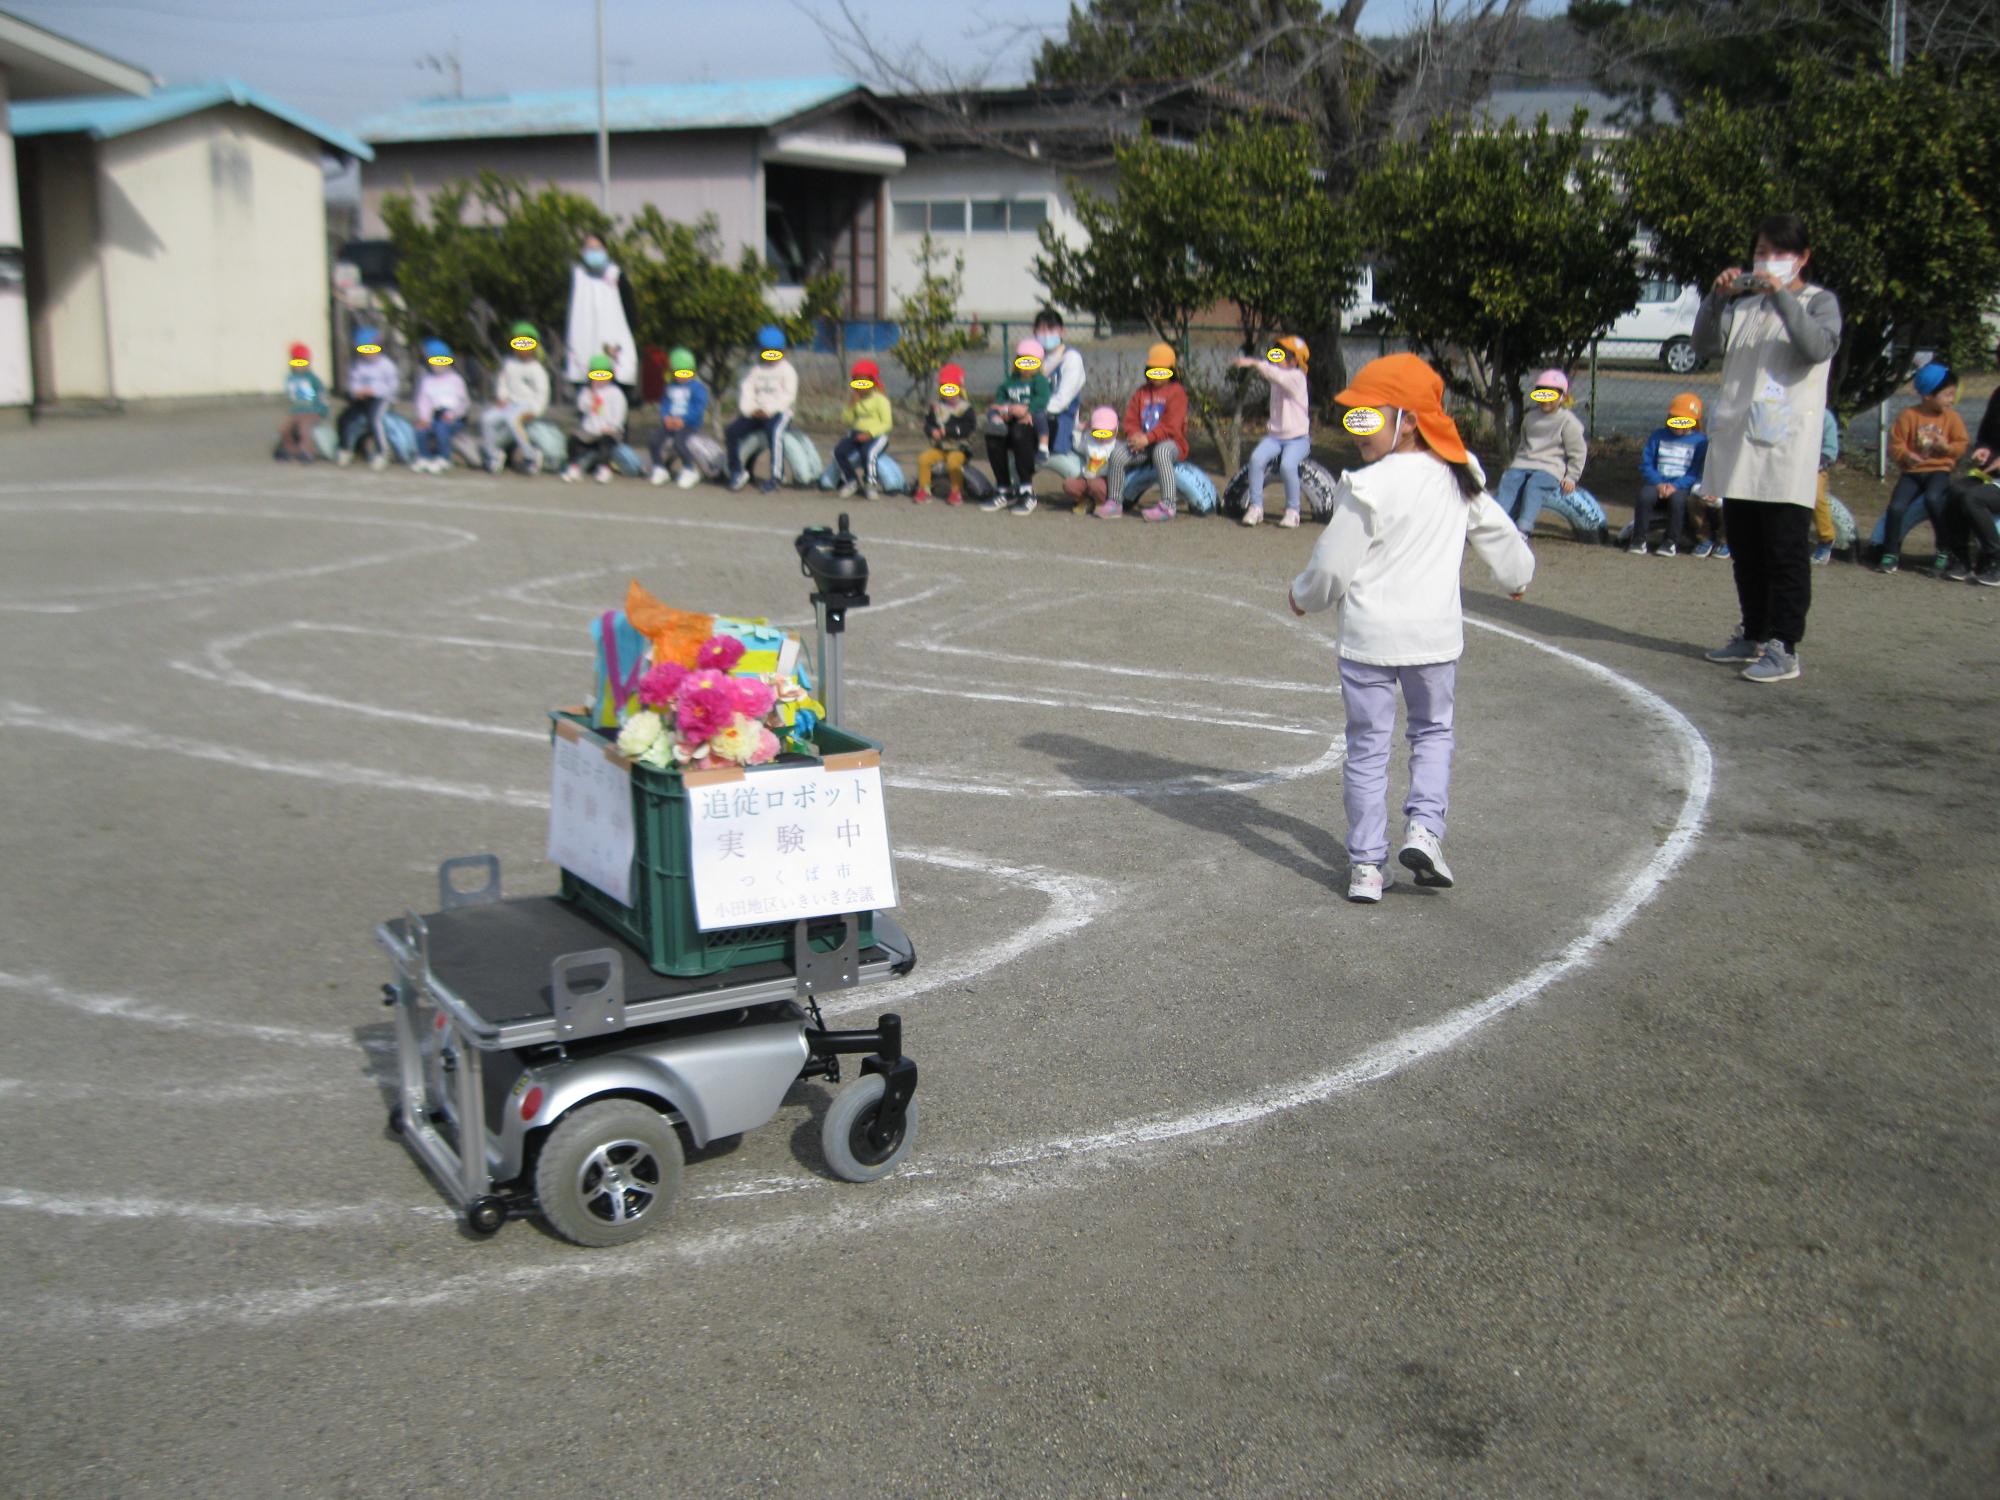 ロボットが子どもの後について動いています。